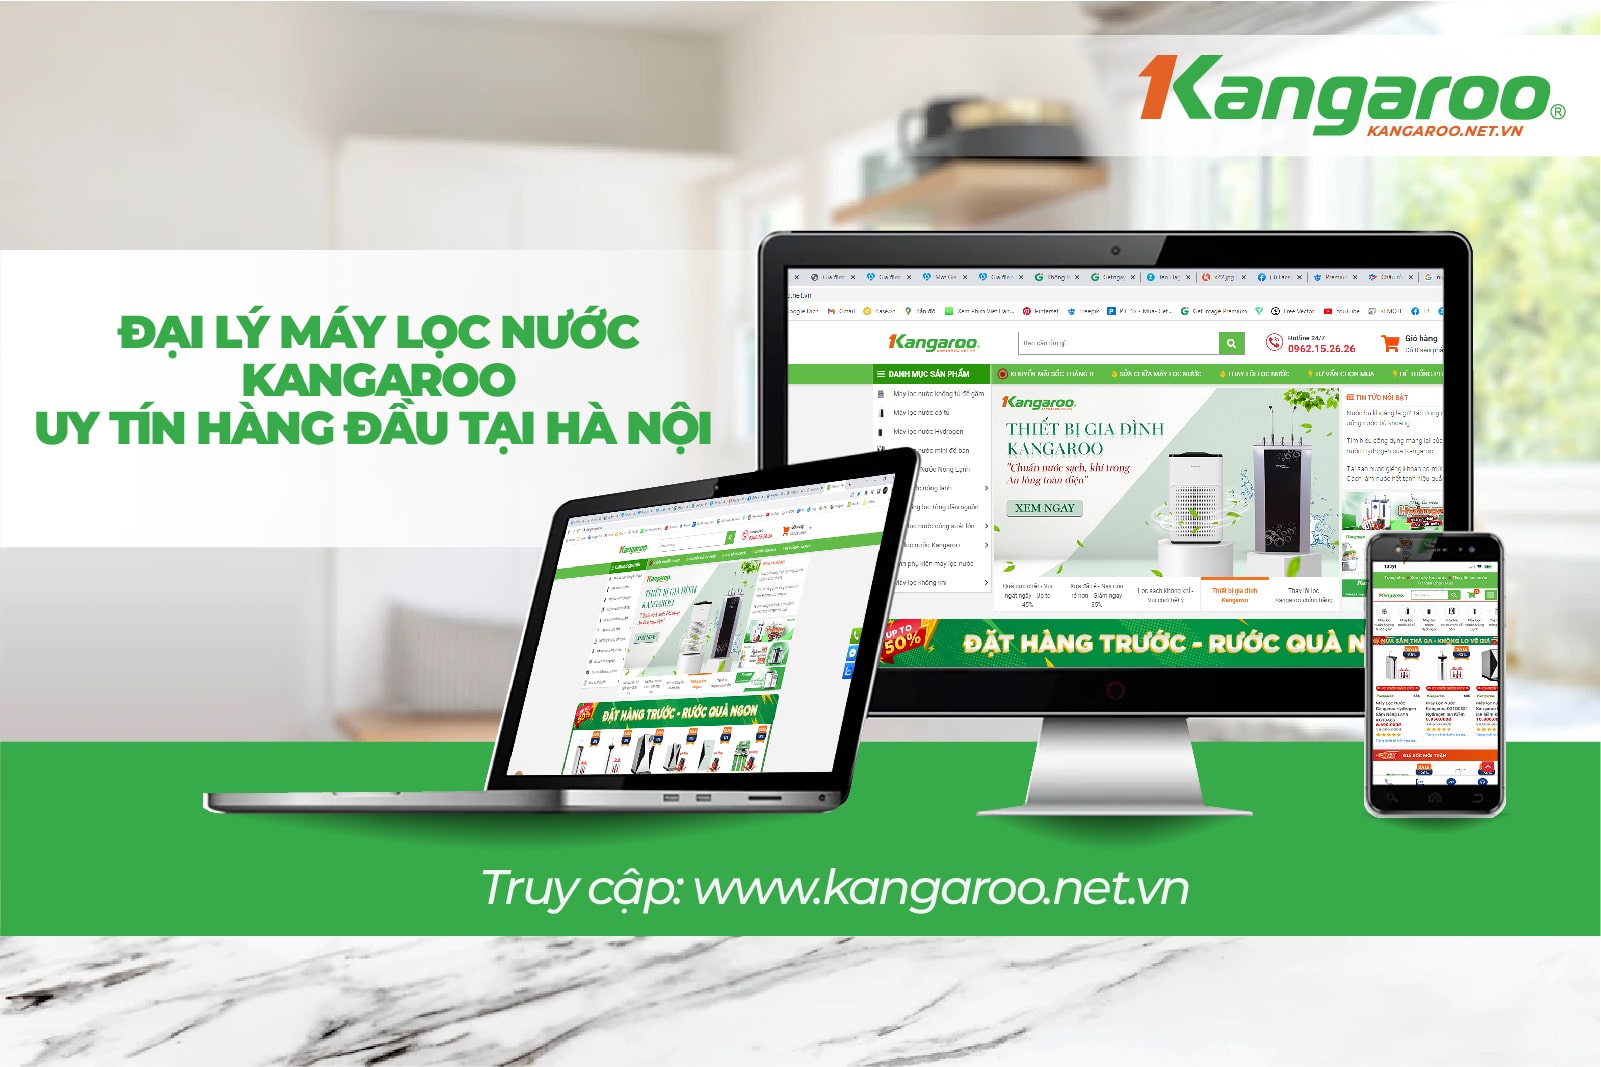 Kangaroo.net.vn là địa chỉ uy tín luôn được  mọi nhà tin dùng 